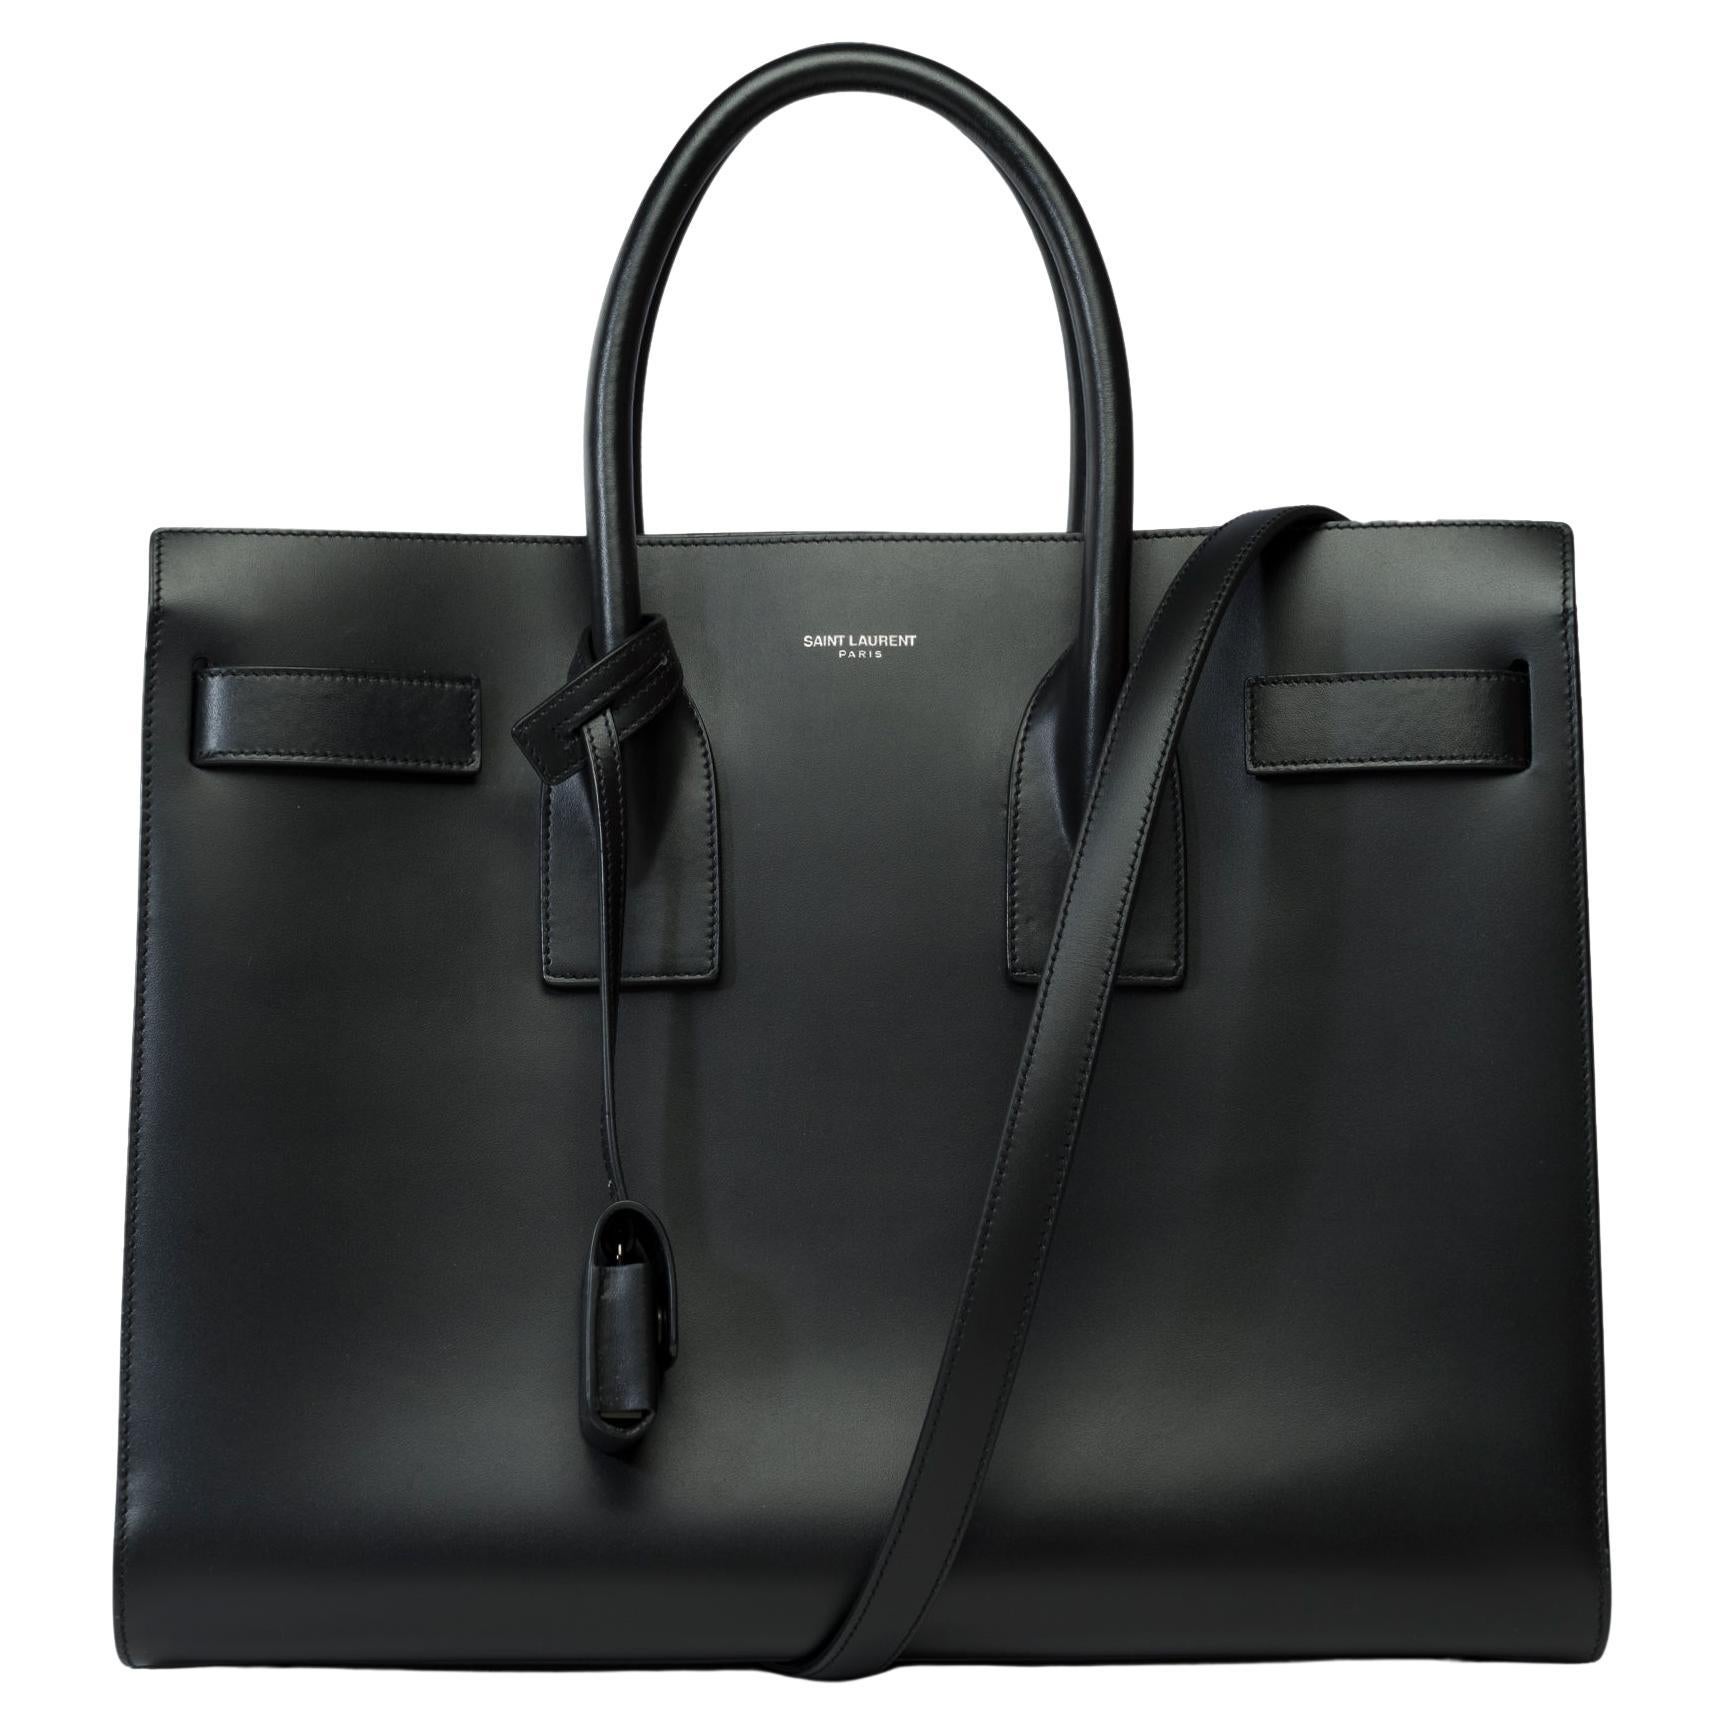 Saint Laurent Sac de Jour Small size handbag strap in black Box calf leather For Sale